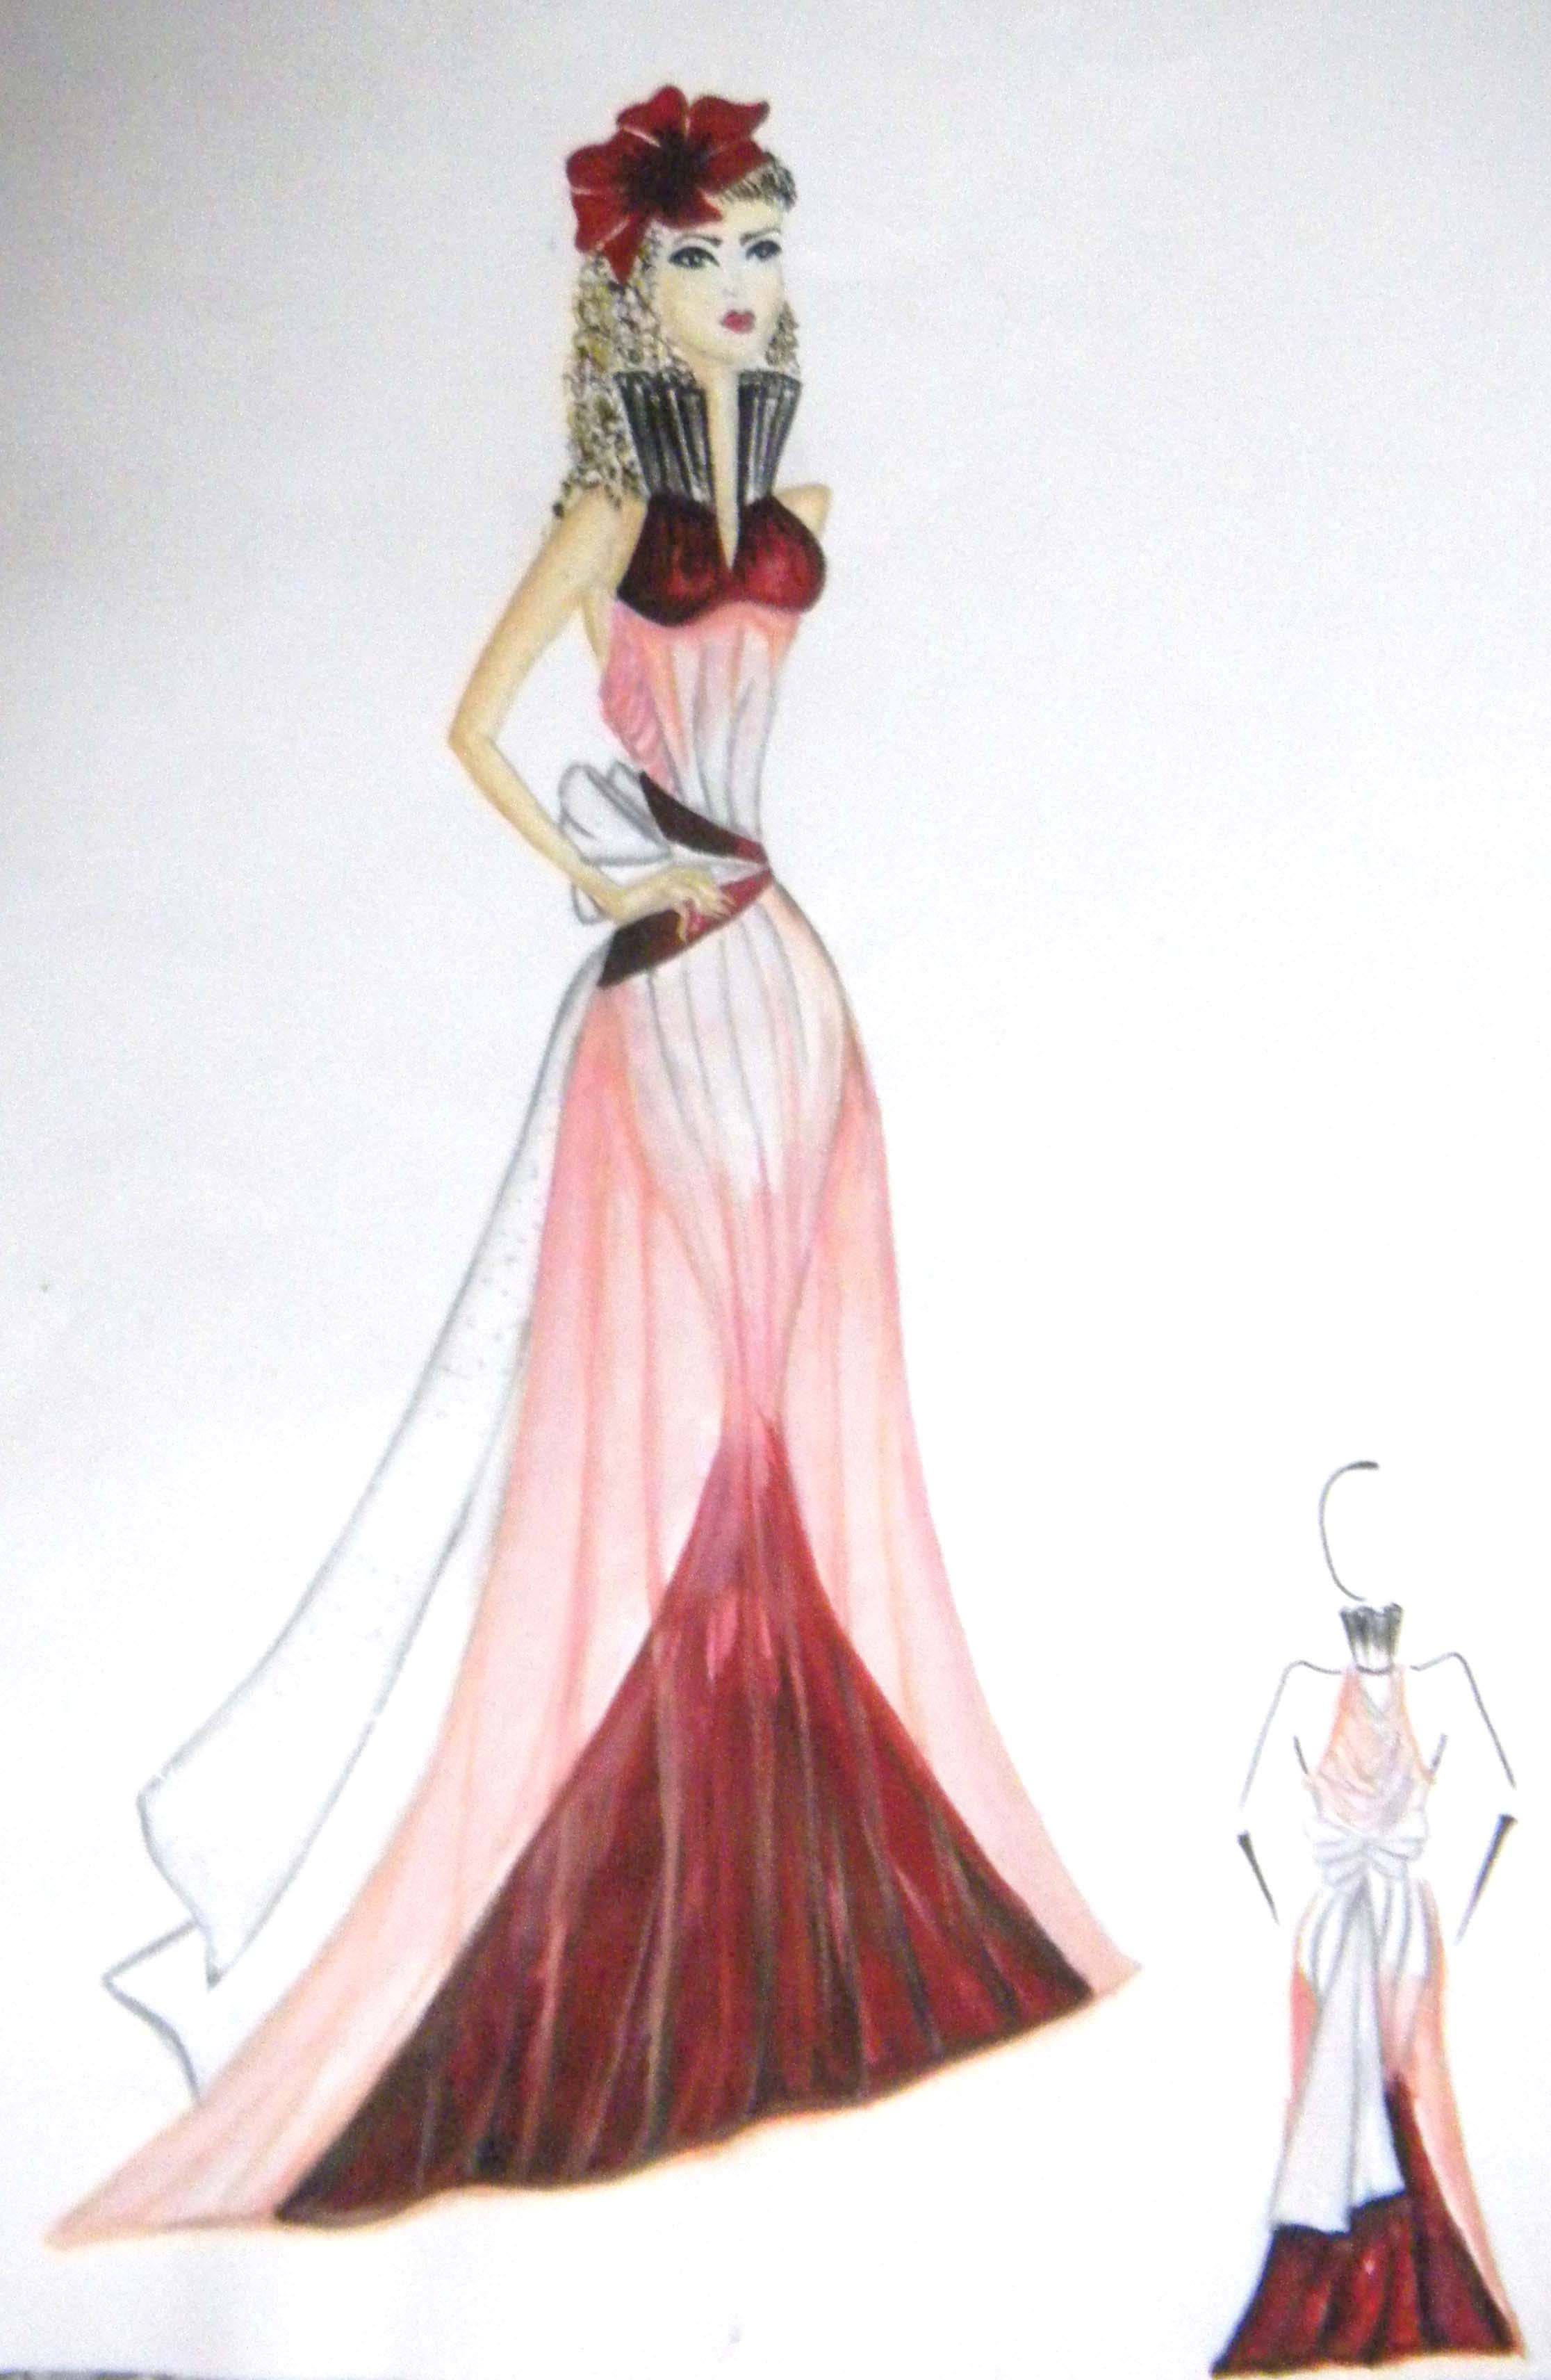 Sarika Singh  Indian Fashion Design Sketches PNG Image  Transparent PNG  Free Download on SeekPNG